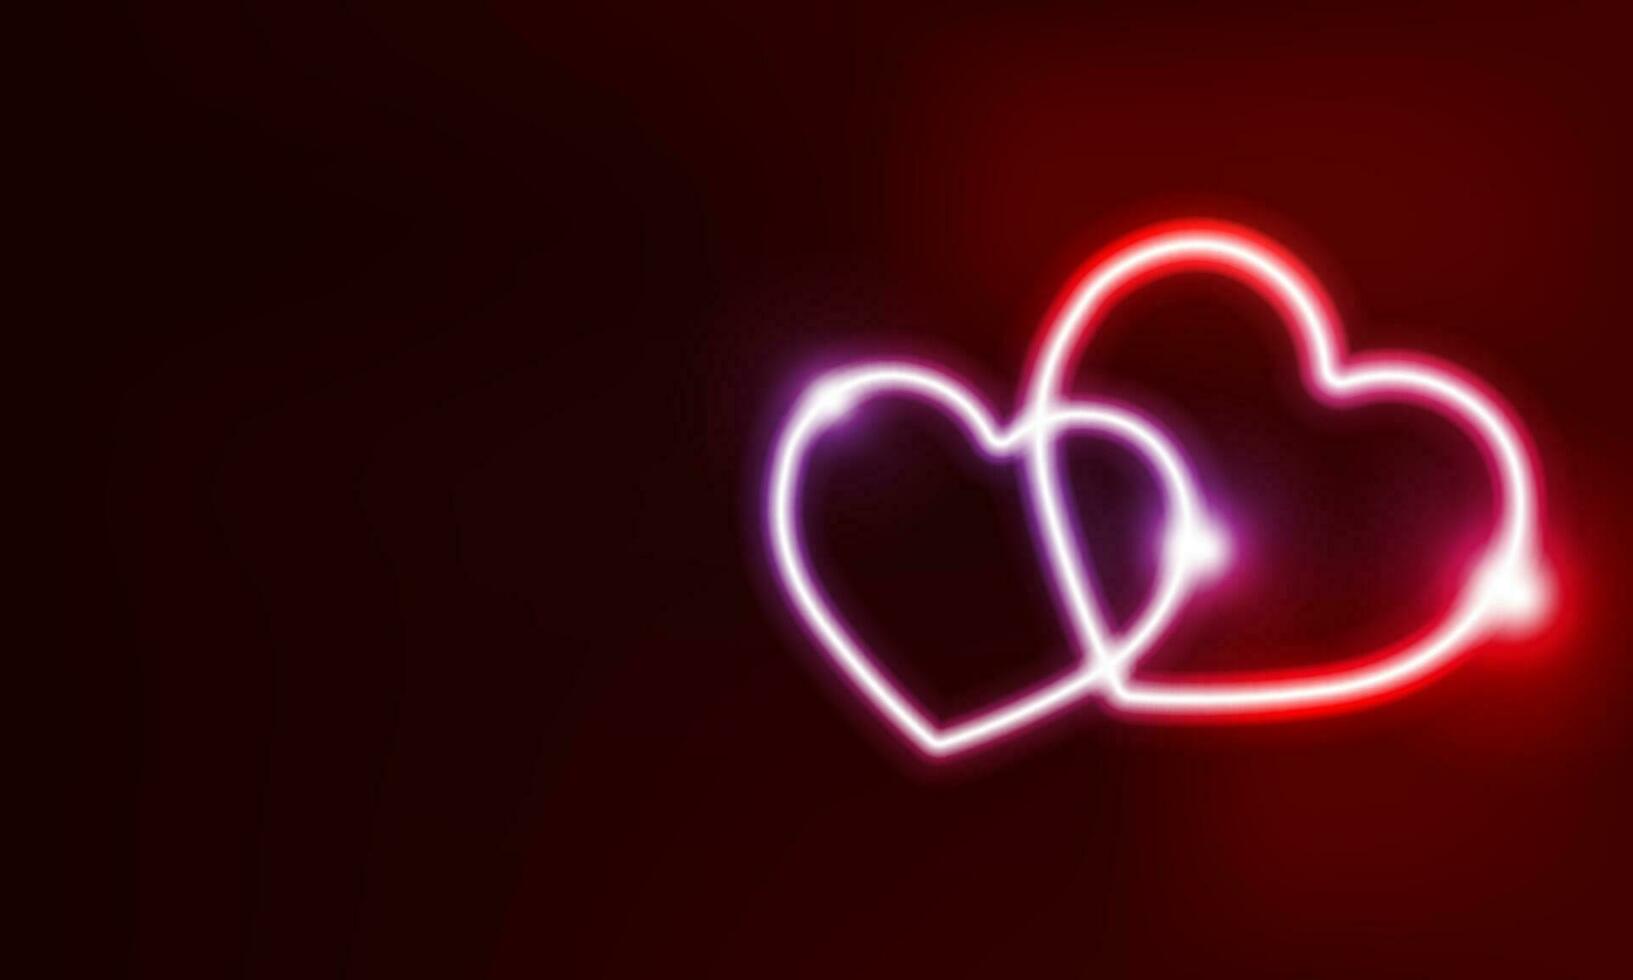 neon hjärta tecken eller ram. Lycklig valentine neon lampor vektor design